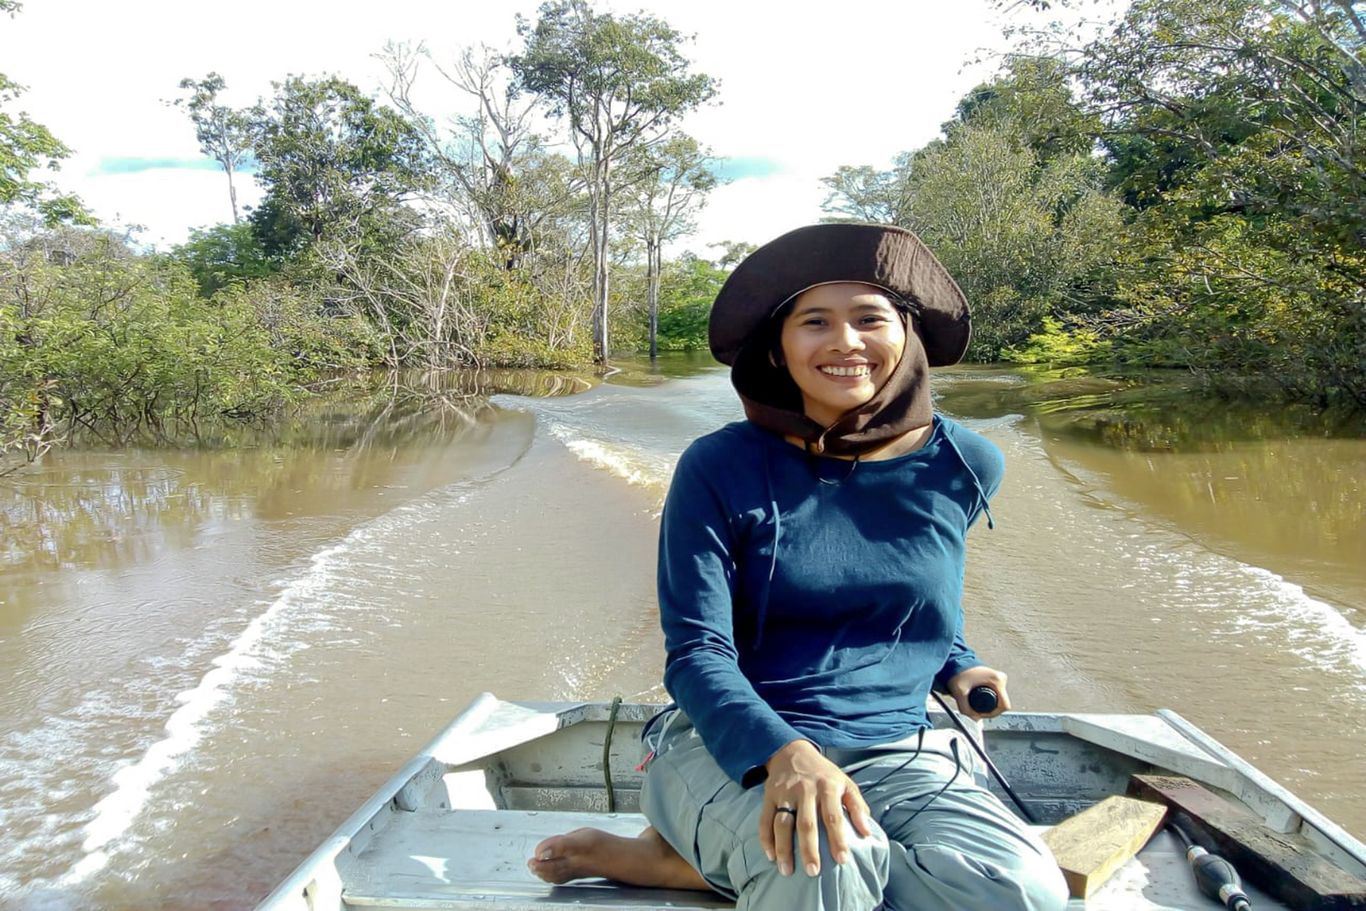 Die CIMI-Mitarbeiterin Jussara ist am Fluss unterwegs, um zum indigenen Volk der Madihadeni zu gelangen. In den indigenen Dörfern unterstützt sie die Menschen vor Ort, lernt aber auch viel von ihnen über das Zusammenleben mit der Natur.